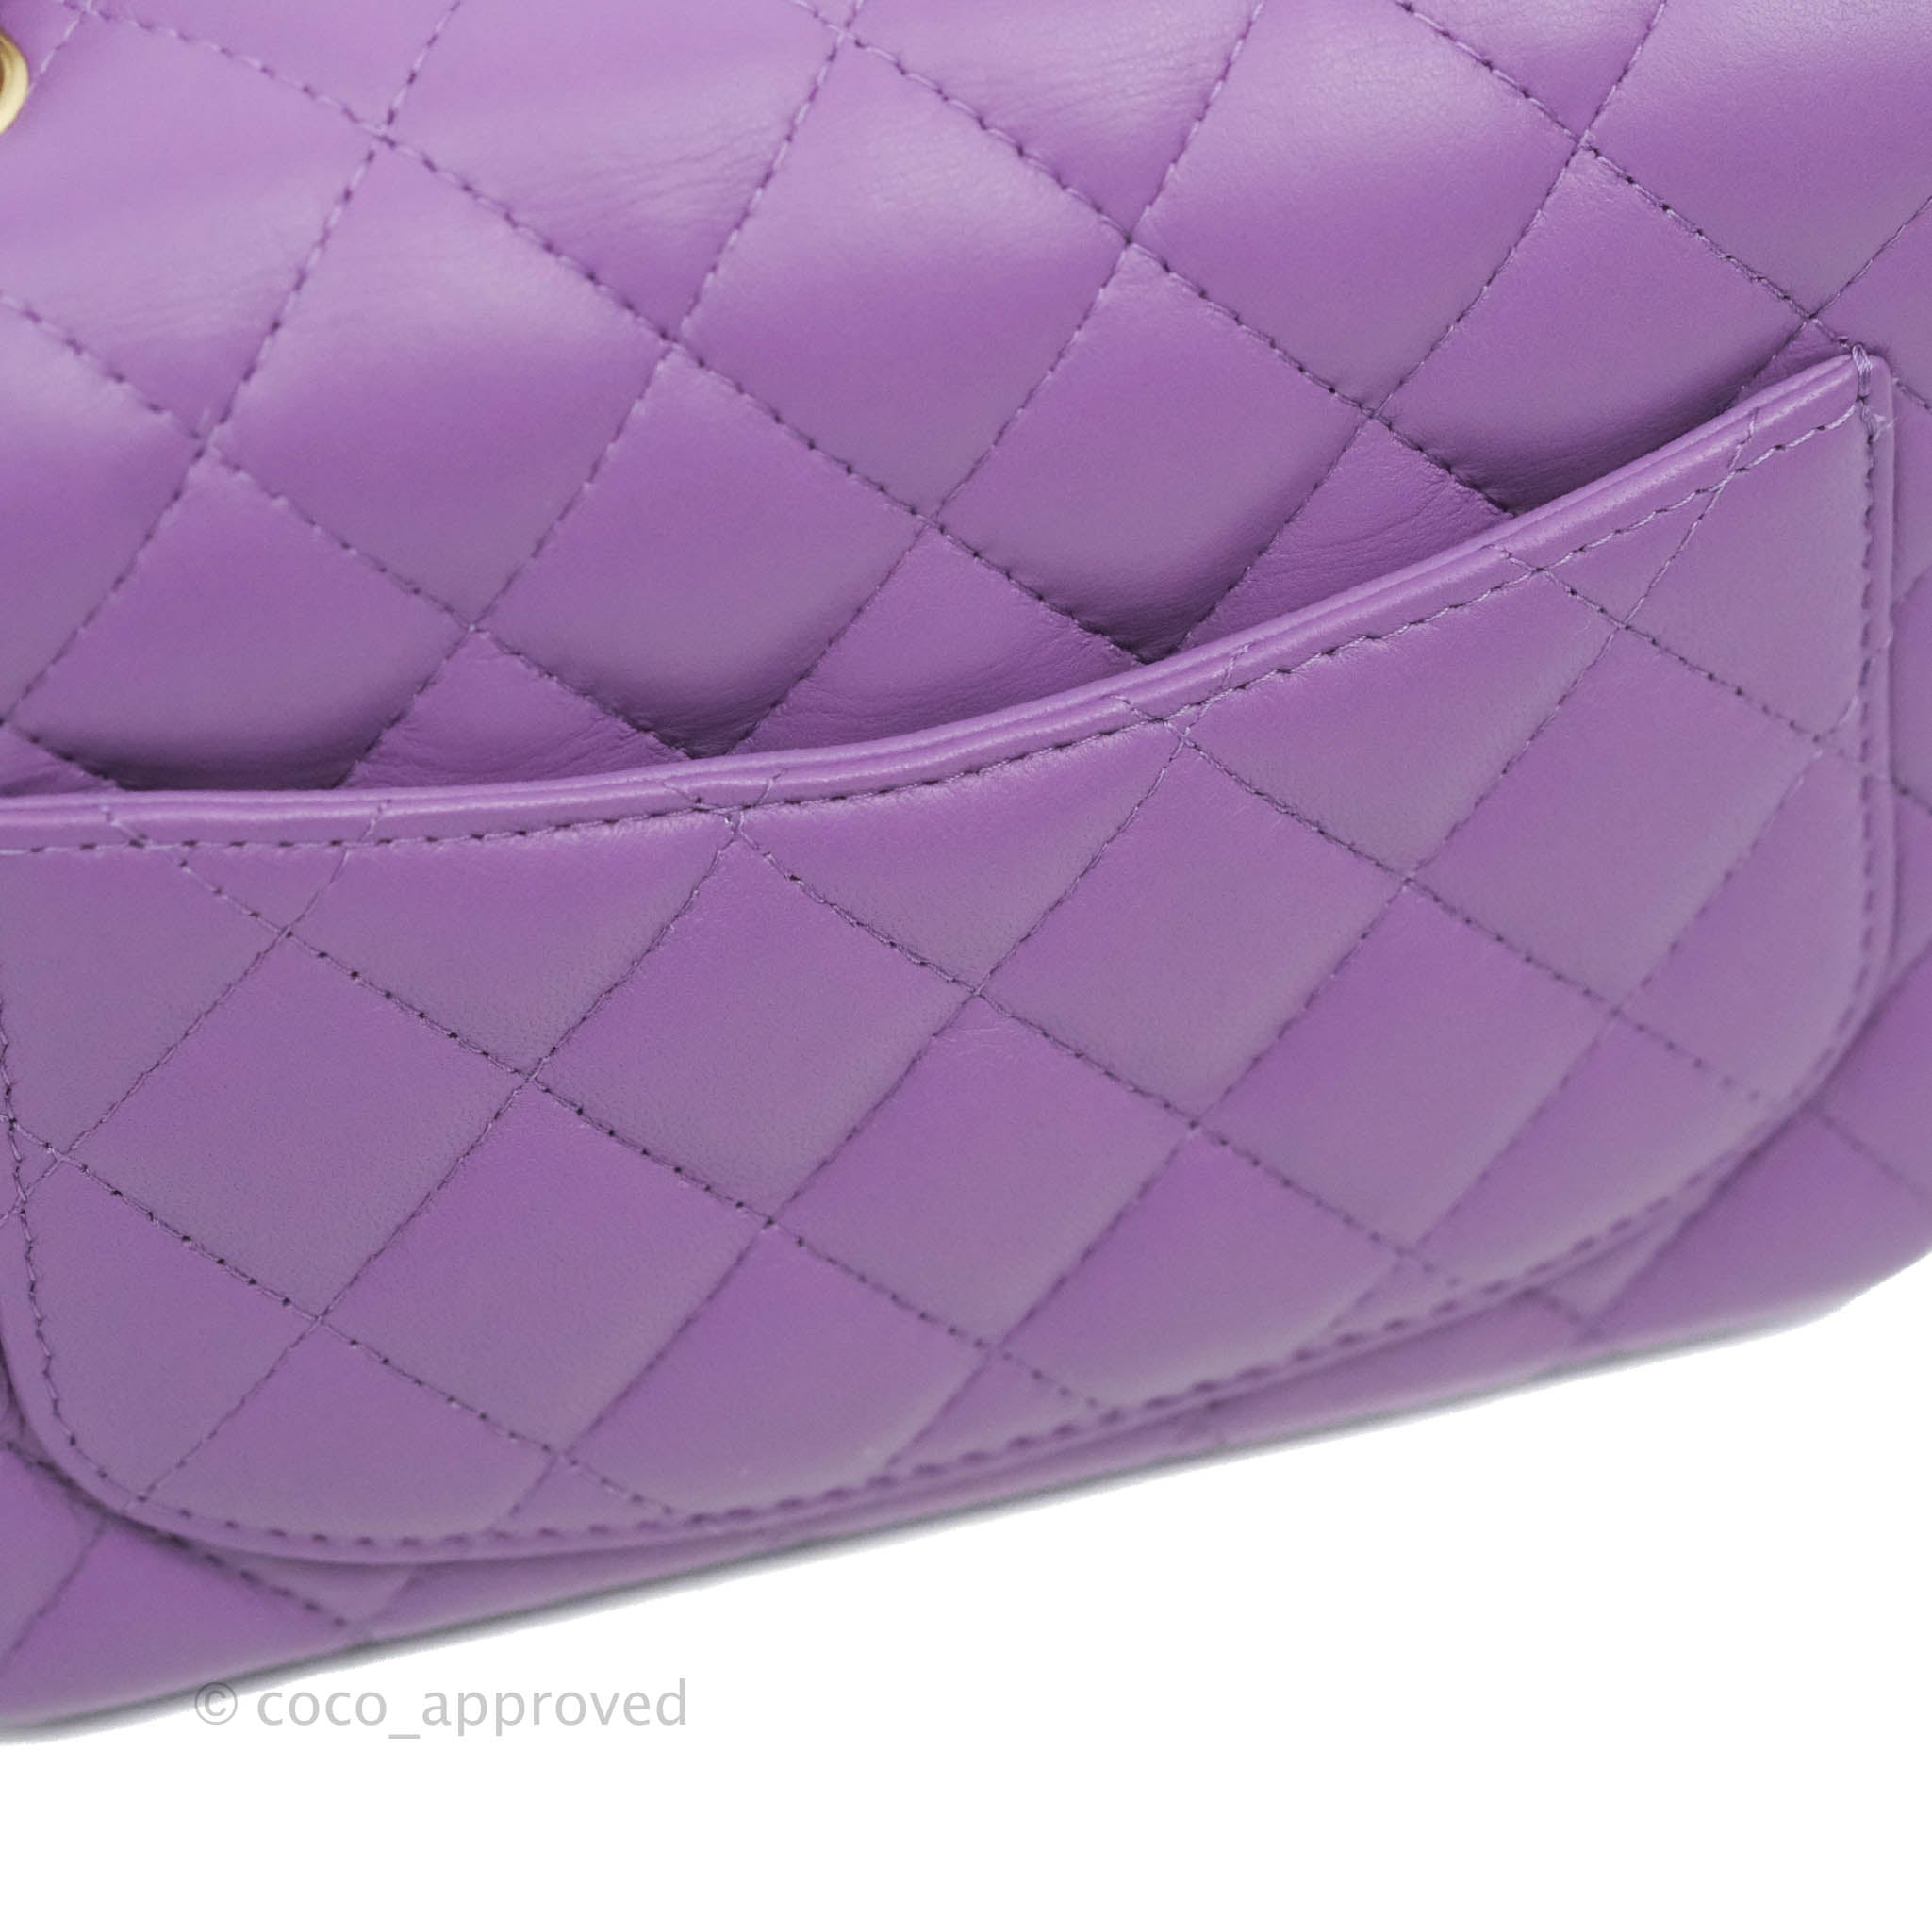 Chanel Mini Square Purple Lambskin Gold Hardware 22P – Coco Approved Studio